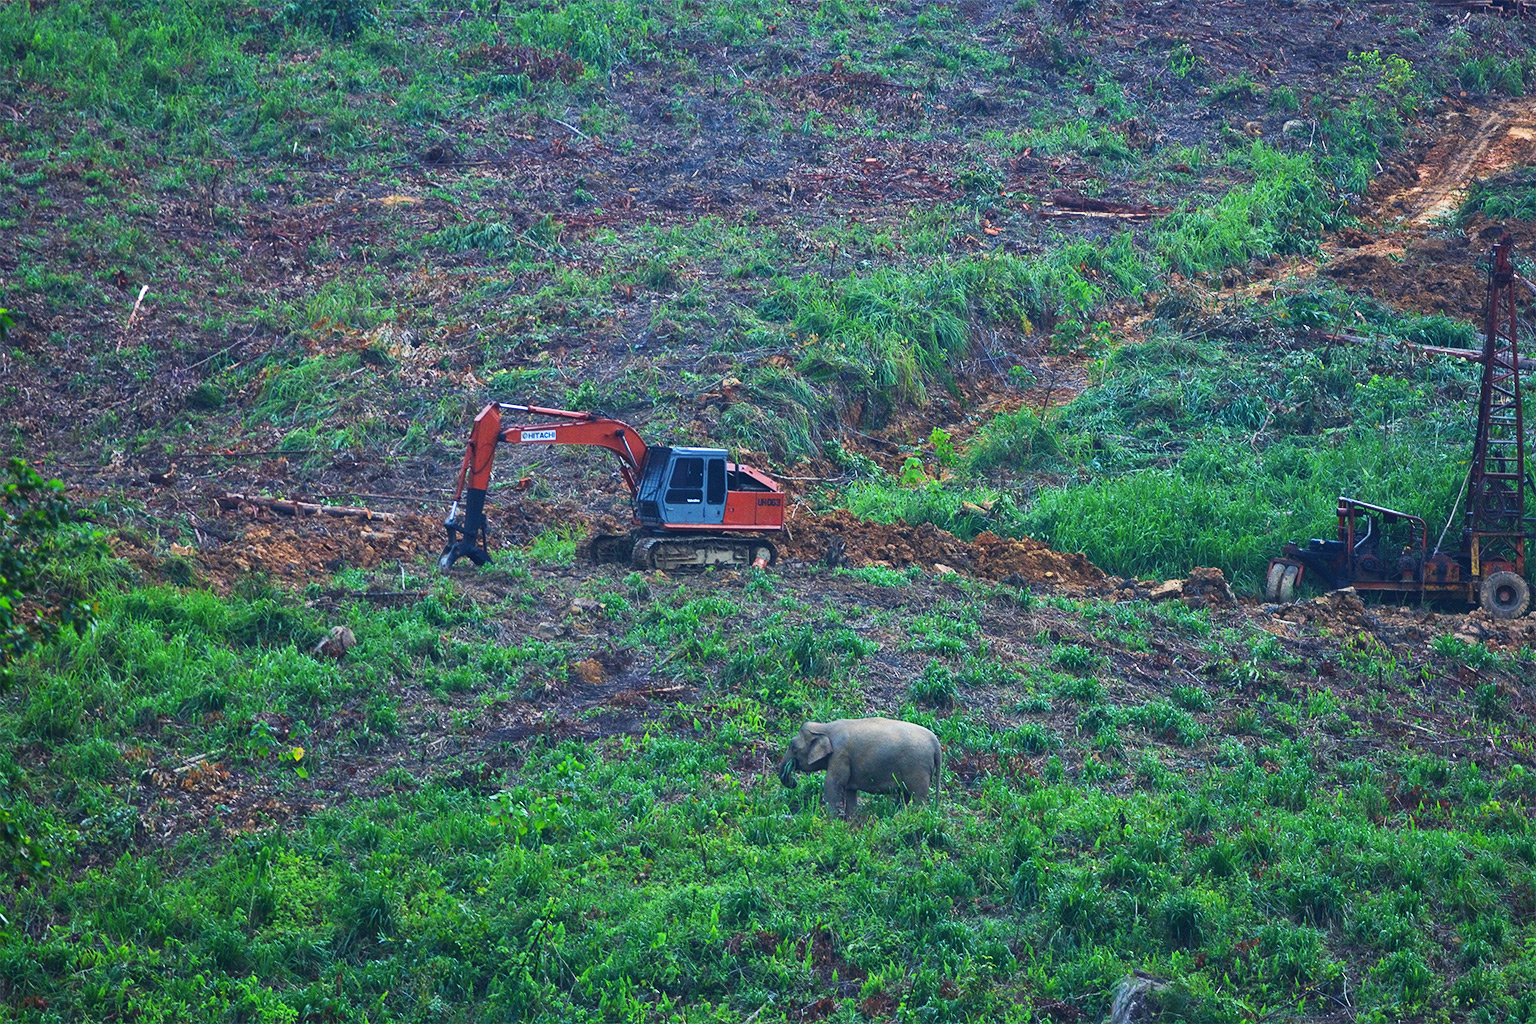 An elephant roams through a recently cleared eucalyptus plantation.